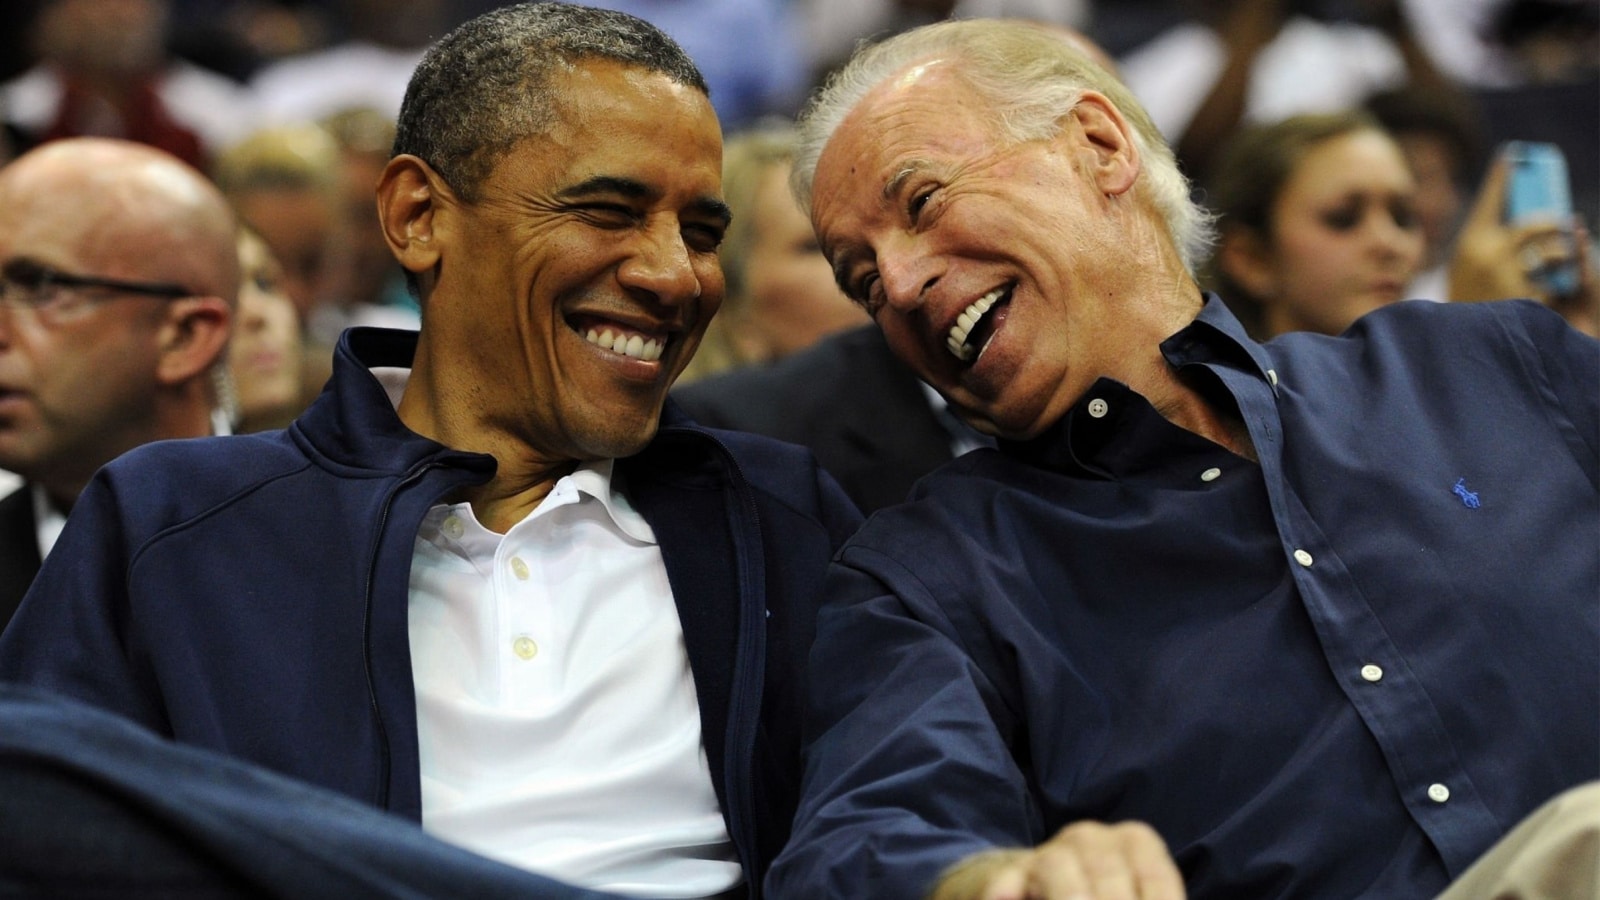 Obama and Biden laughing